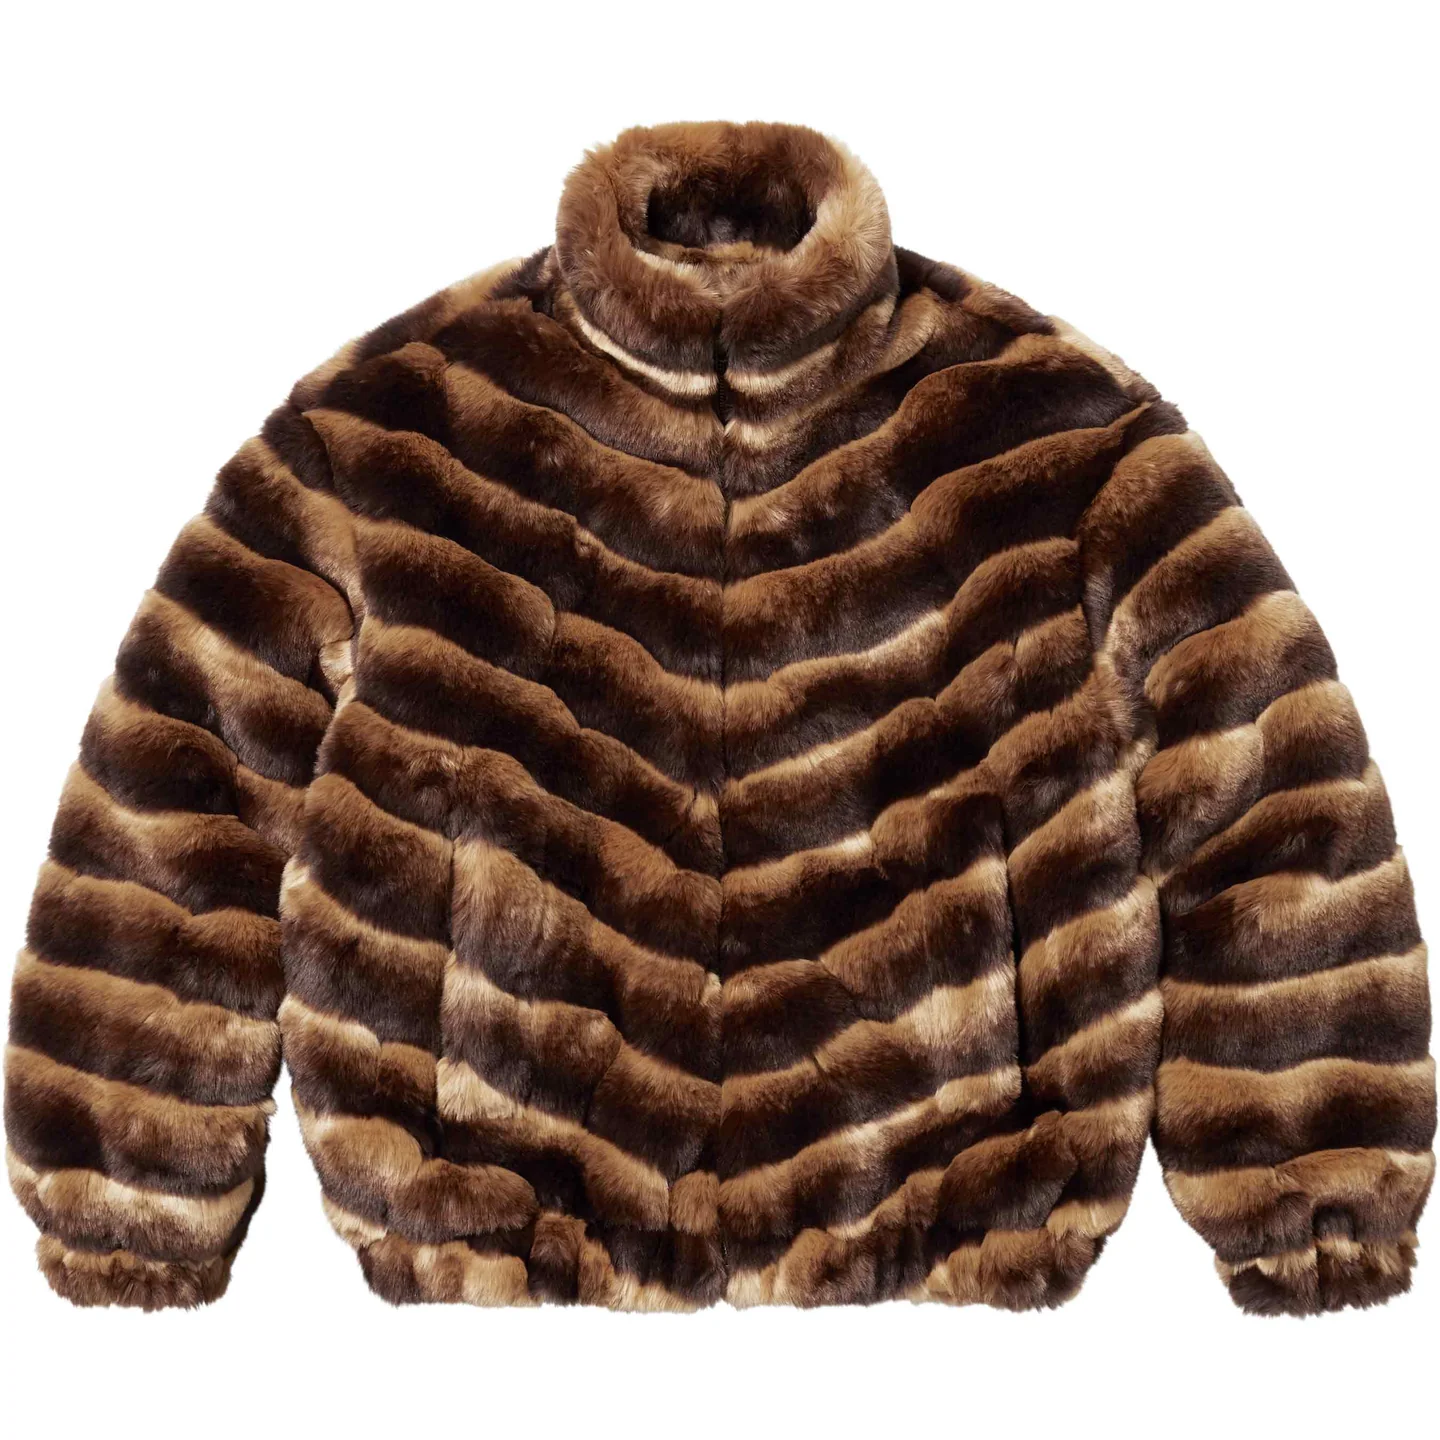 Faux Fur Jacket | Supreme 24ss